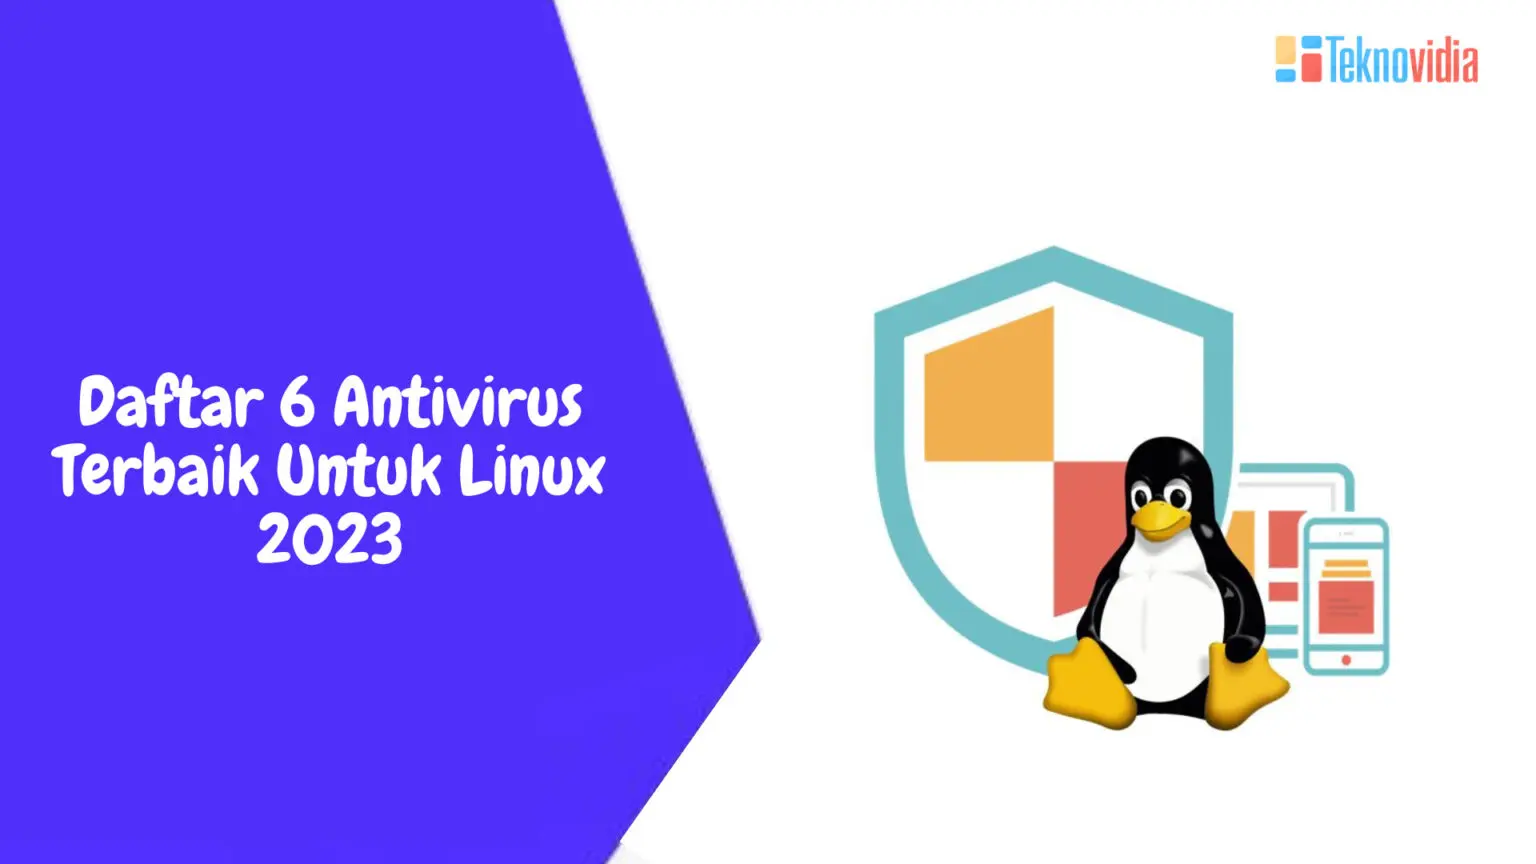 Daftar 6 Antivirus Terbaik Untuk Linux 2023